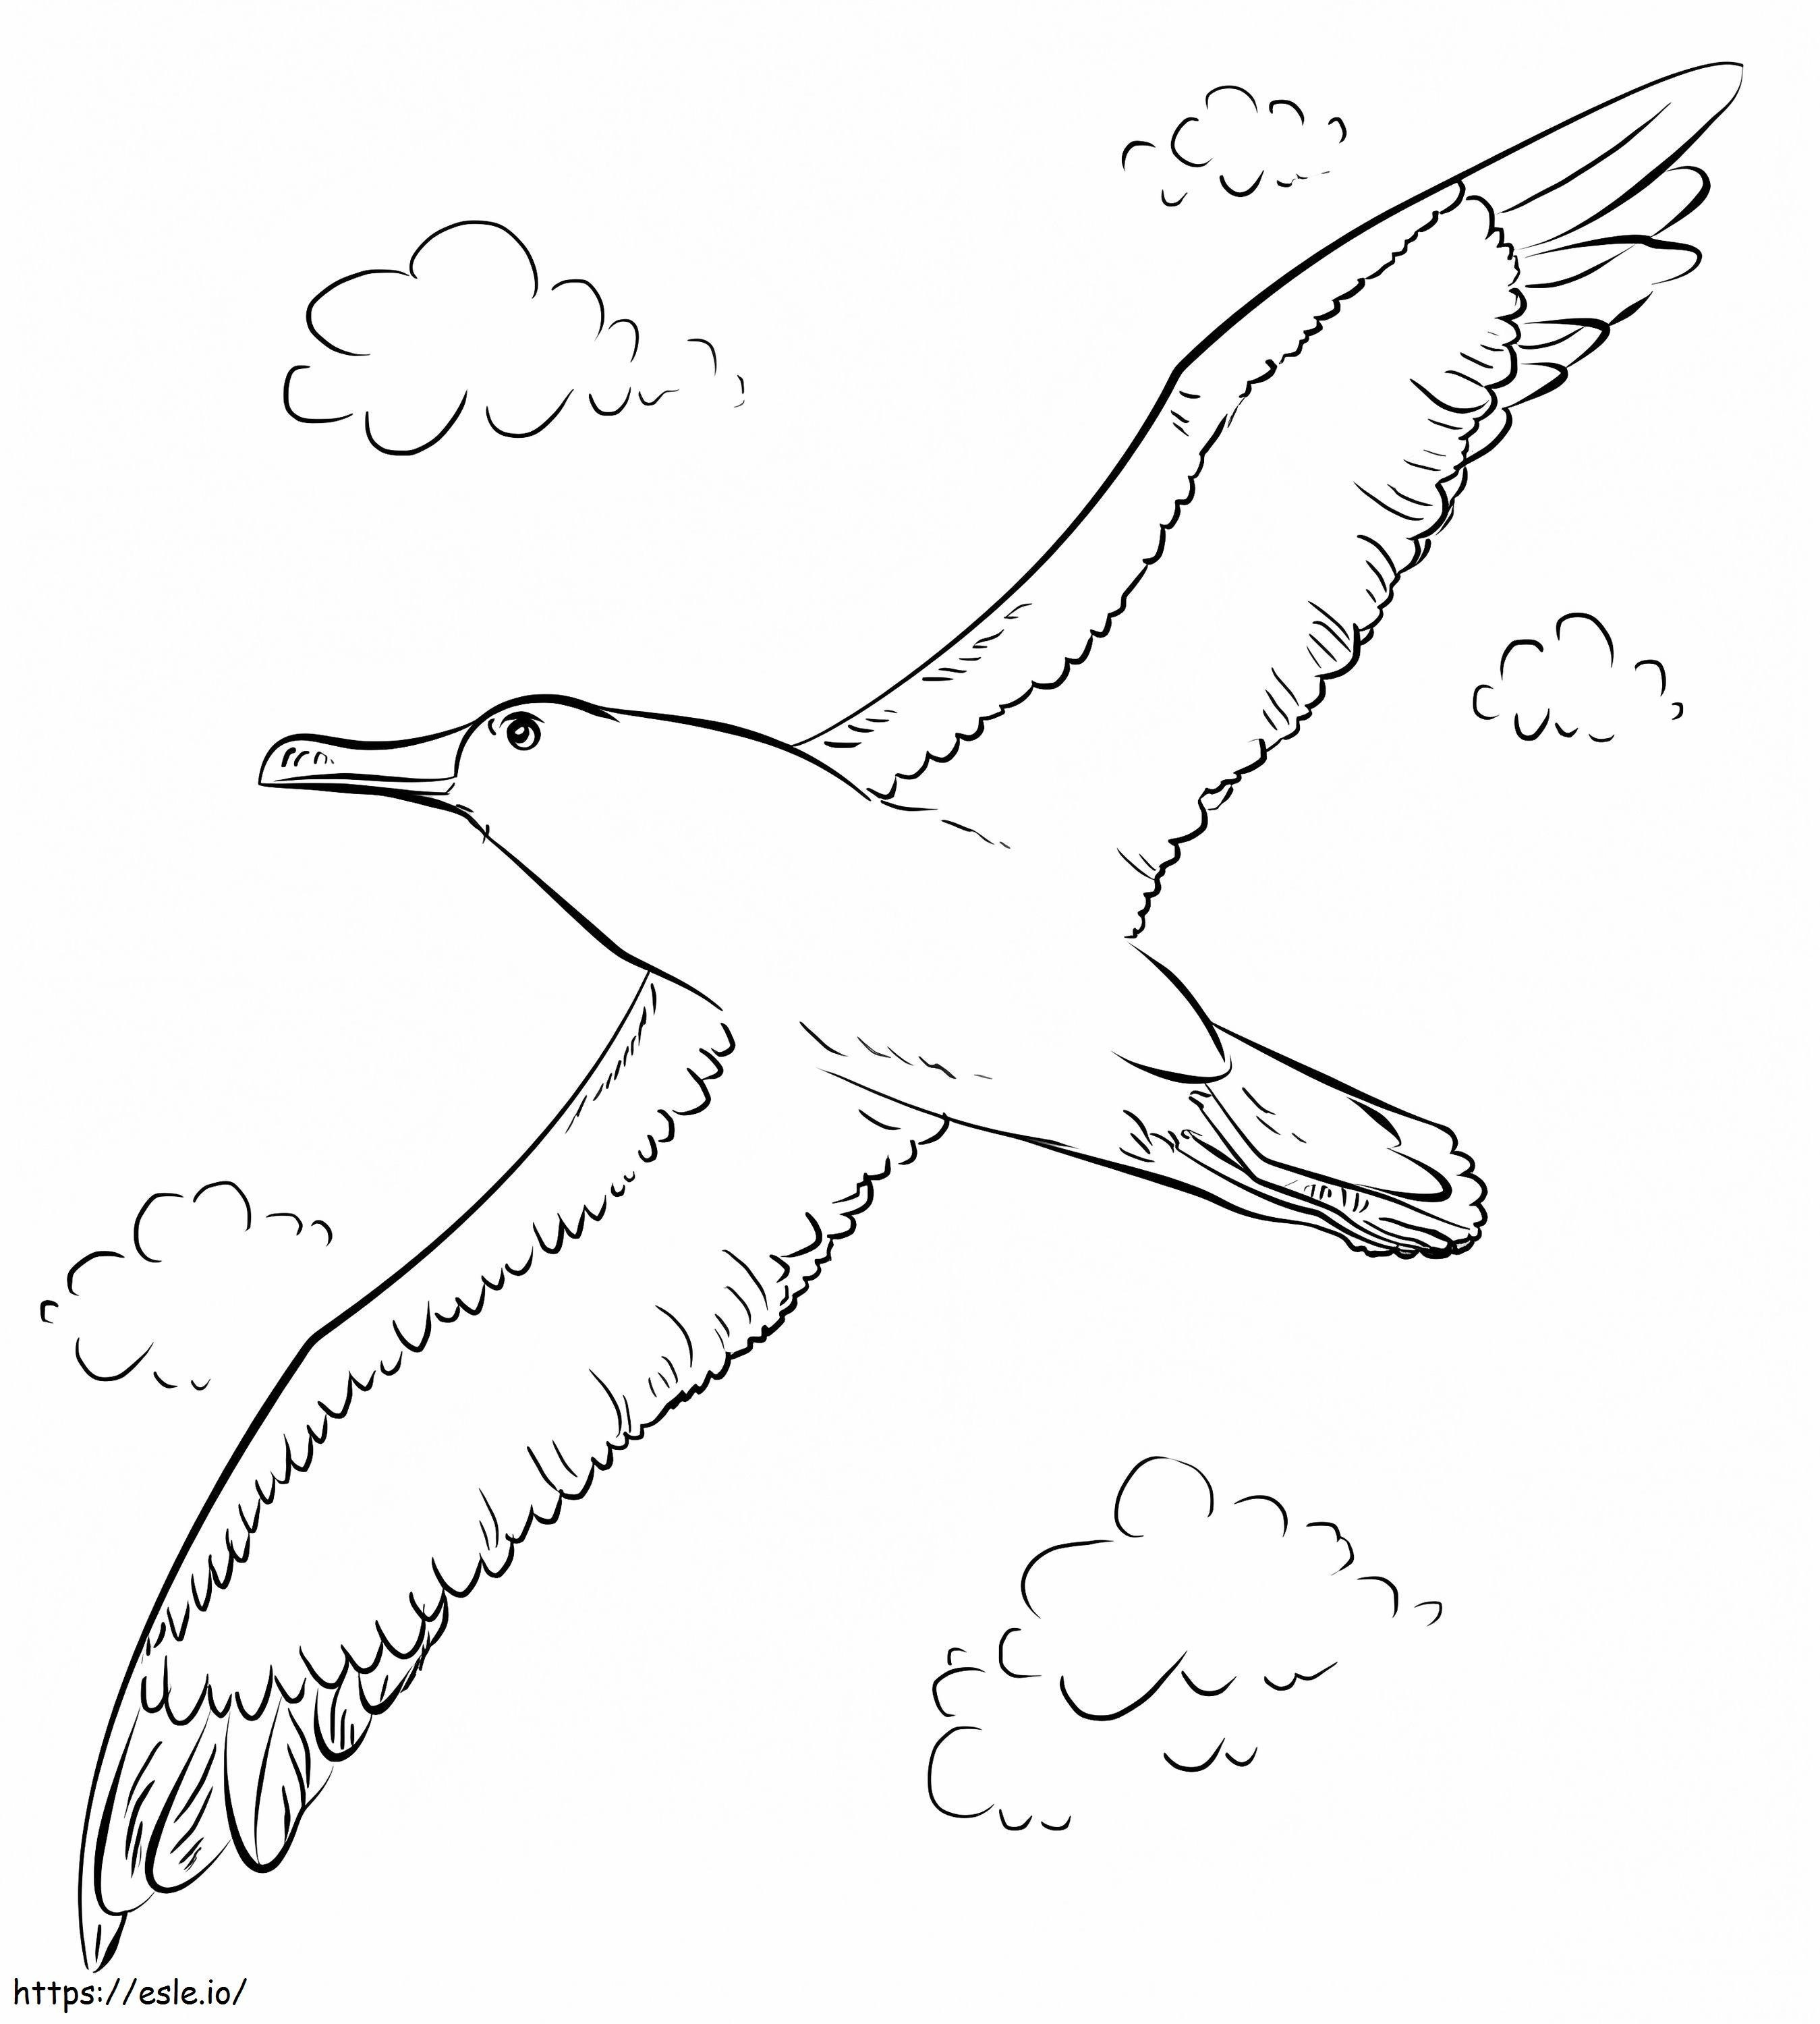 Bullers Albatros Uçuyor boyama